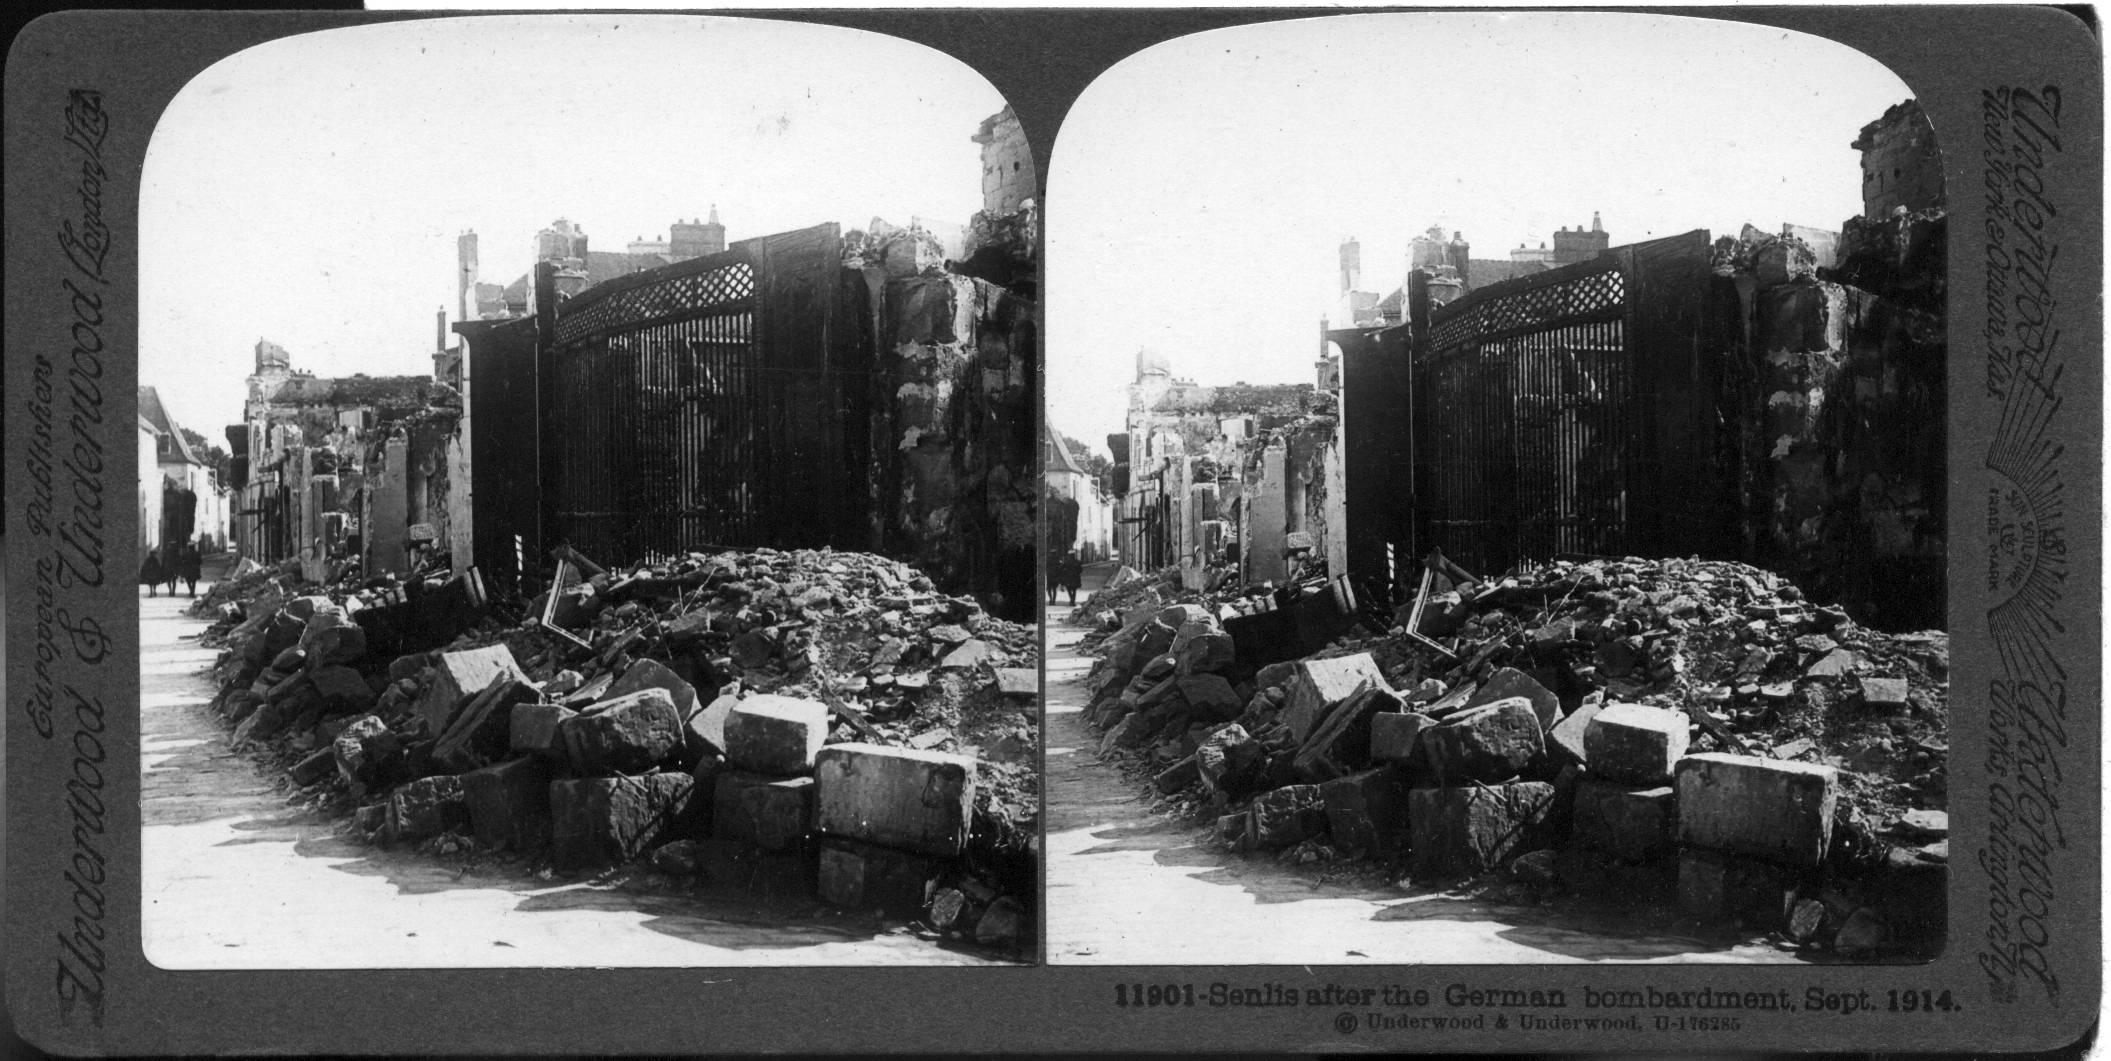 Senlis after German bombardment, September 19, 1914